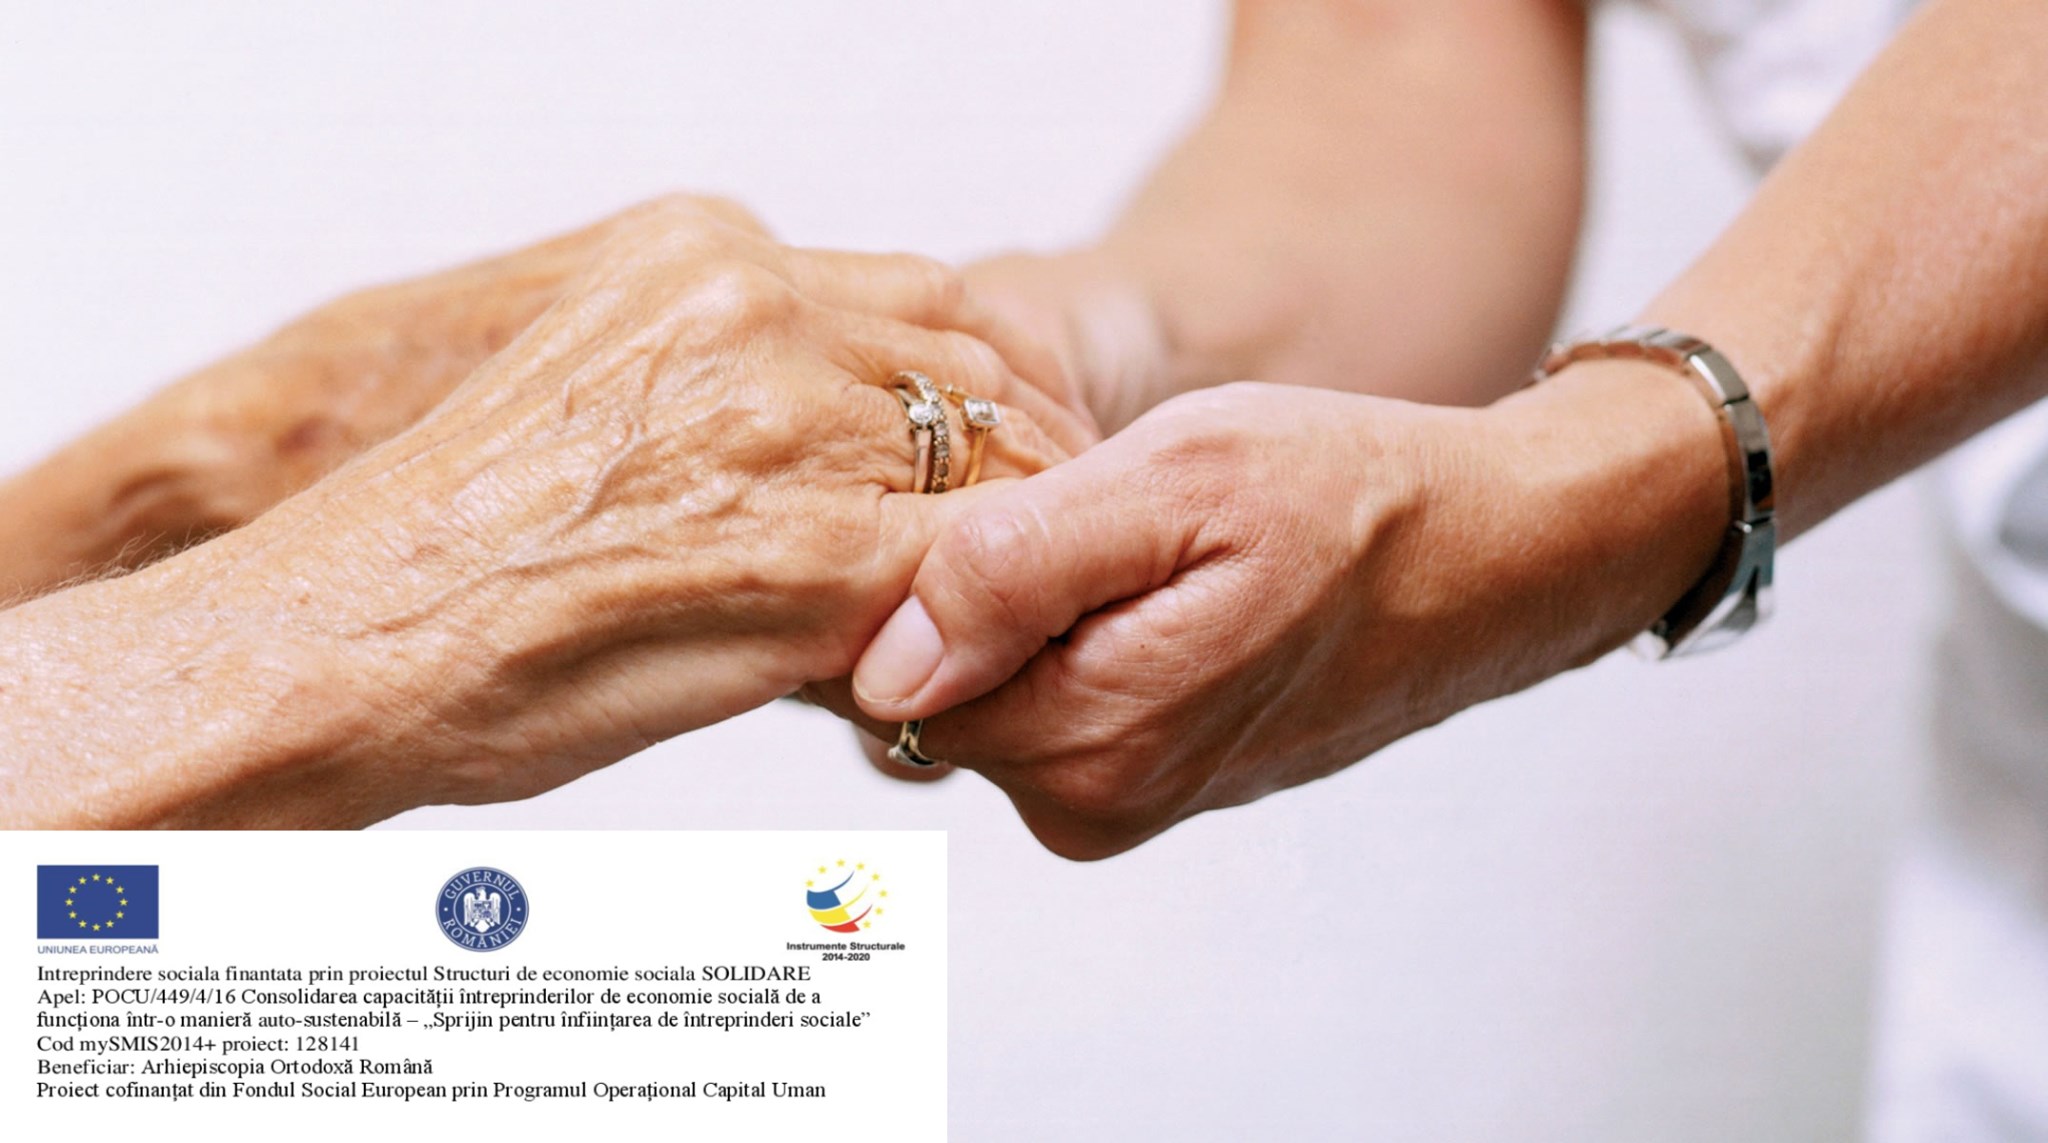 O asociație din Sibiu va oferi servicii de întreținere la domiciliu pentru persoanele vârstnice și cu dizabilități. Oricine poate face voluntariat